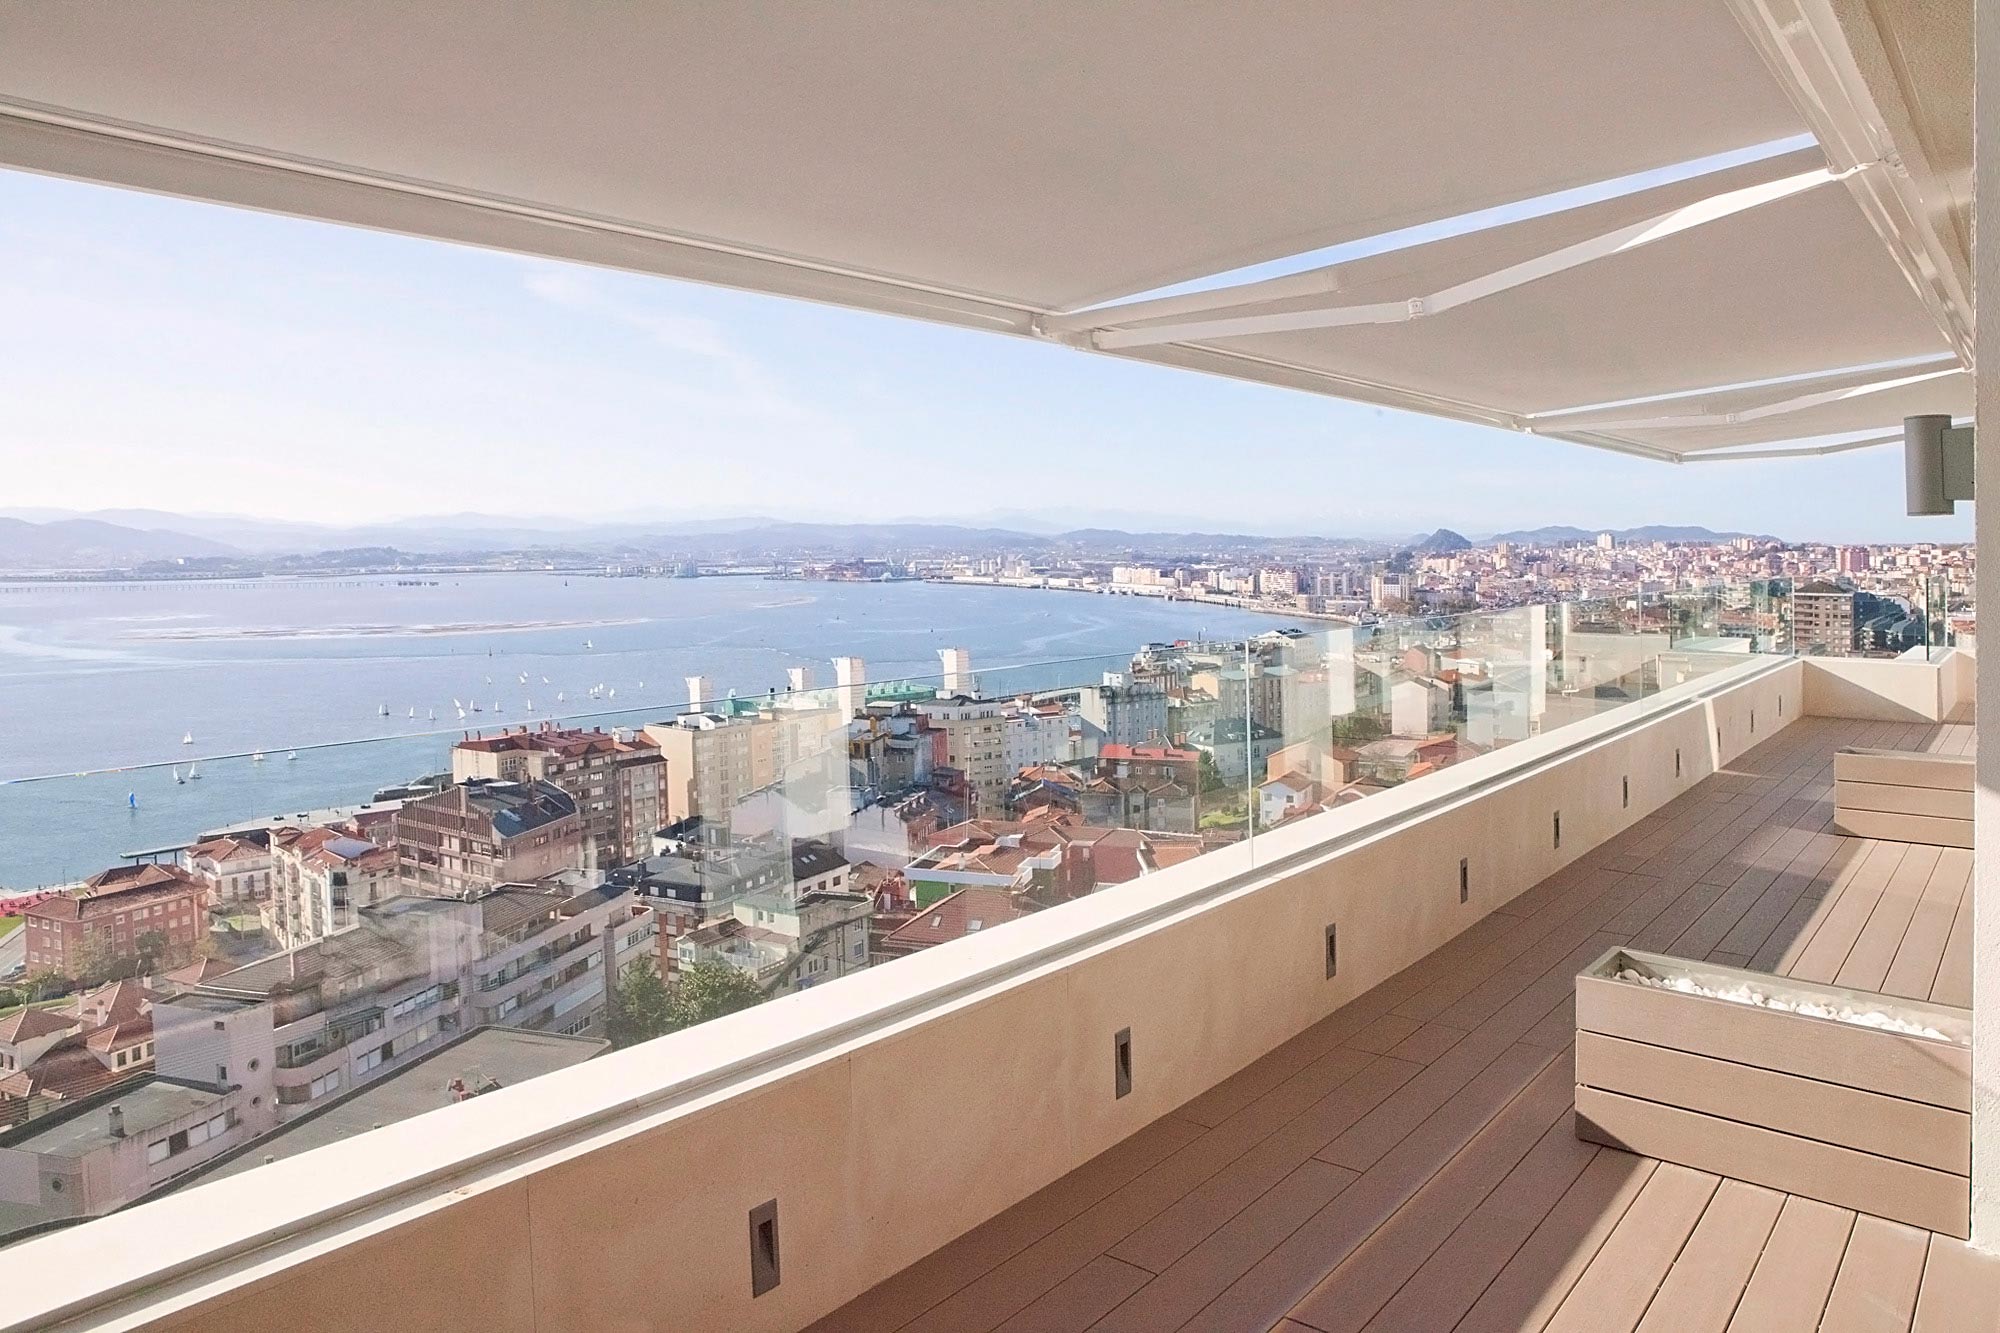 Terraza de diseño con vistas al mar en vivienda de lujo diseñada por Moah Arquitectos en Santander